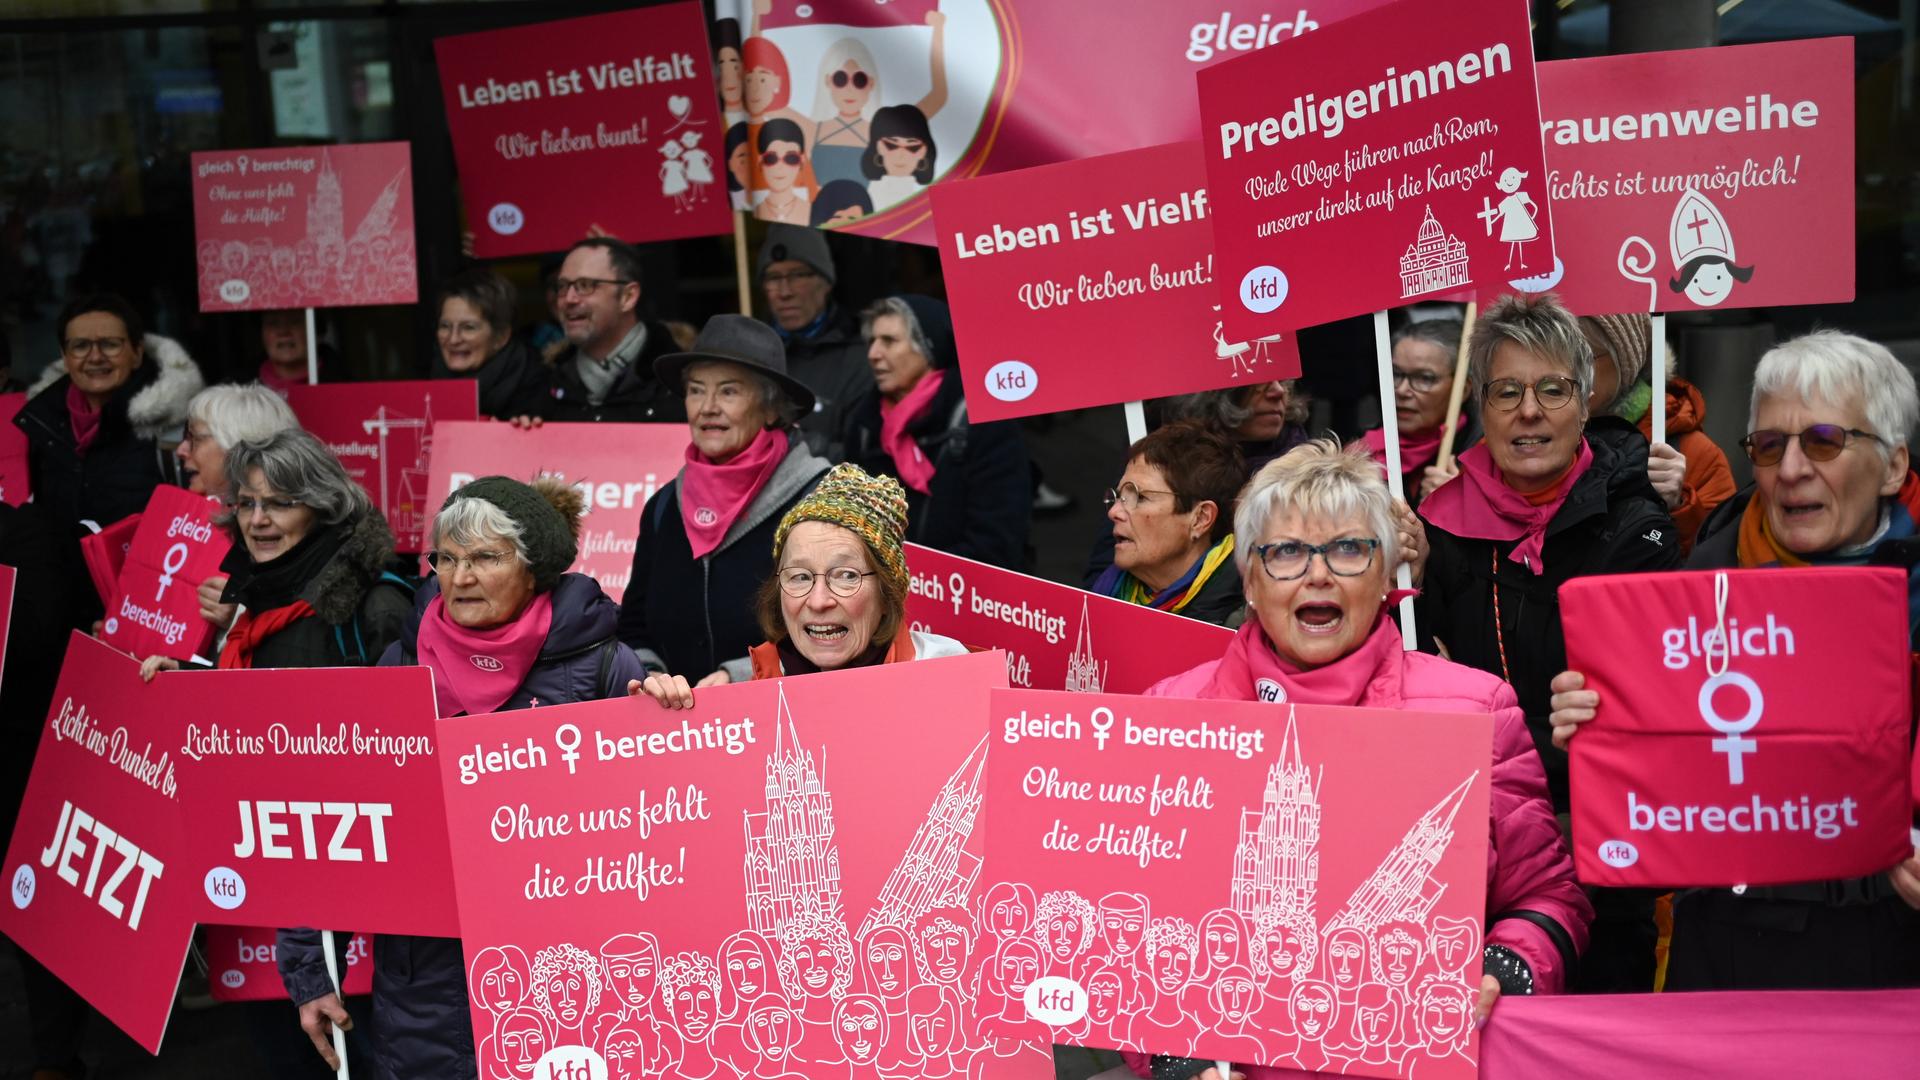 Eine Gruppe von Frauen hält rosa Schilder hoch. Auf denen stehen Sachen wie "Ohne uns fehlt die Hälfte" oder "Gleichberechtigung".